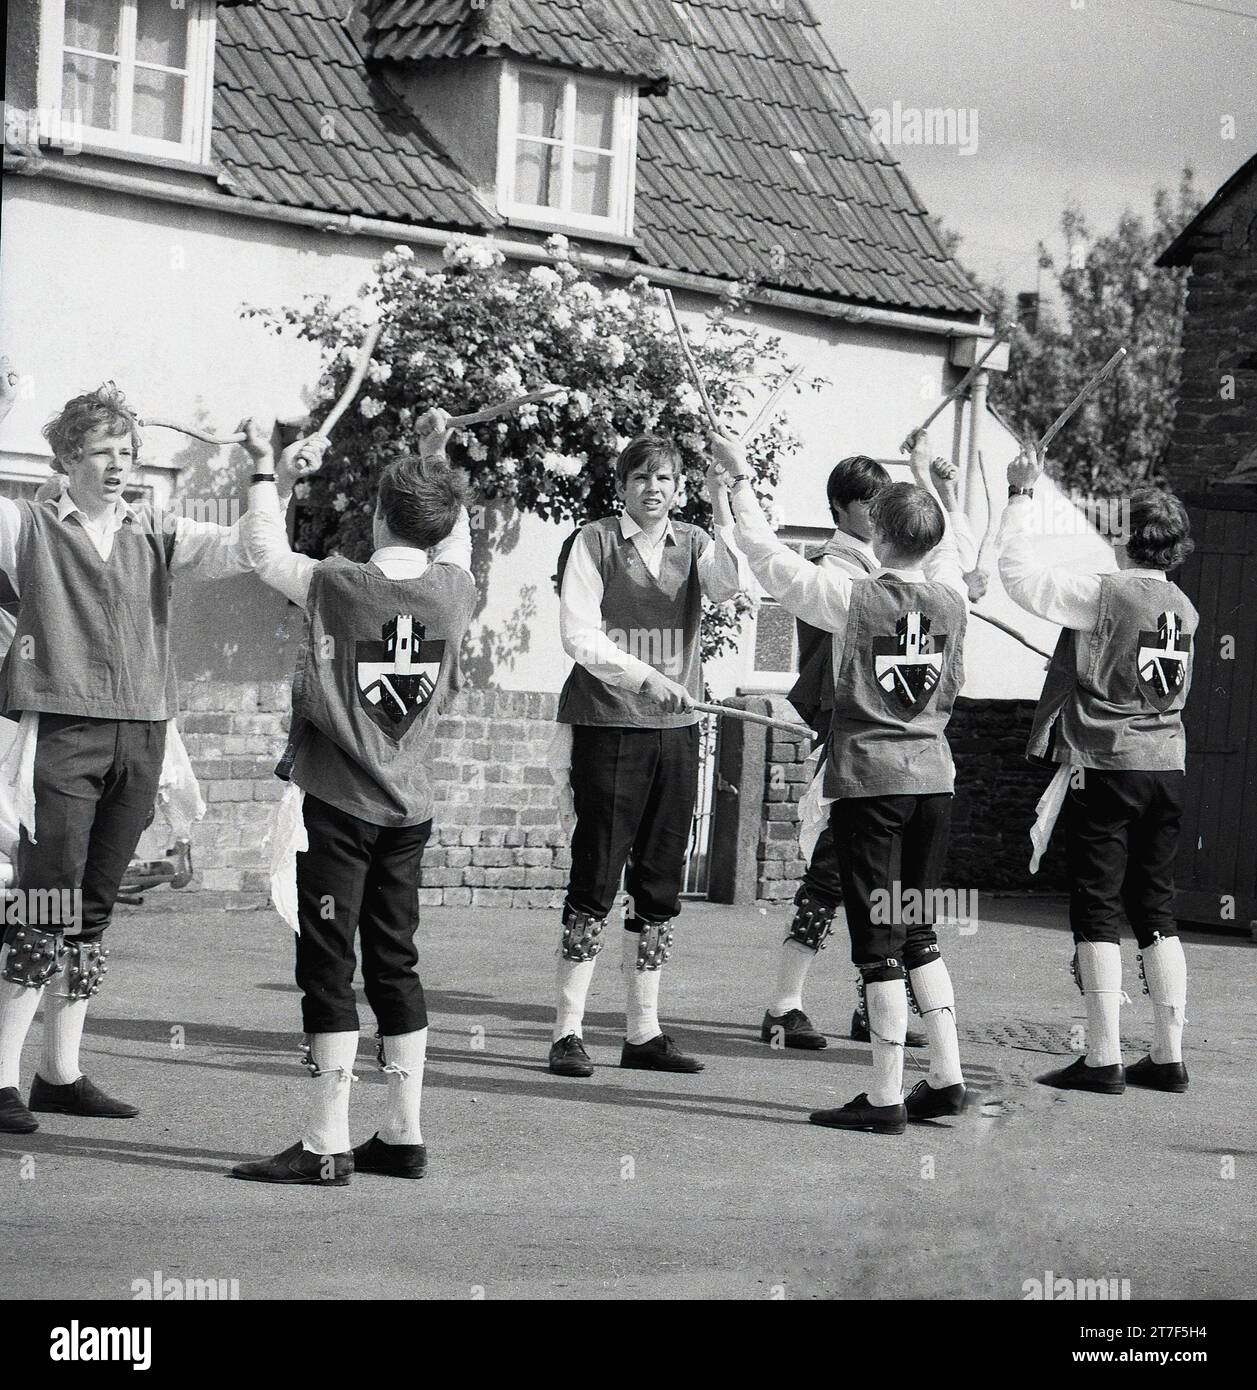 Années 1960, historiques, hommes adultes et jeunes hommes vêtus de costumes faisant une danse morris, Angleterre, Royaume-Uni. La danse Morris est une forme populaire de danse folklorique anglaise jouée lors de festivals et de vacances pour célébrer l'arrivée de l'été et la récolte d'or de l'automne. Banque D'Images